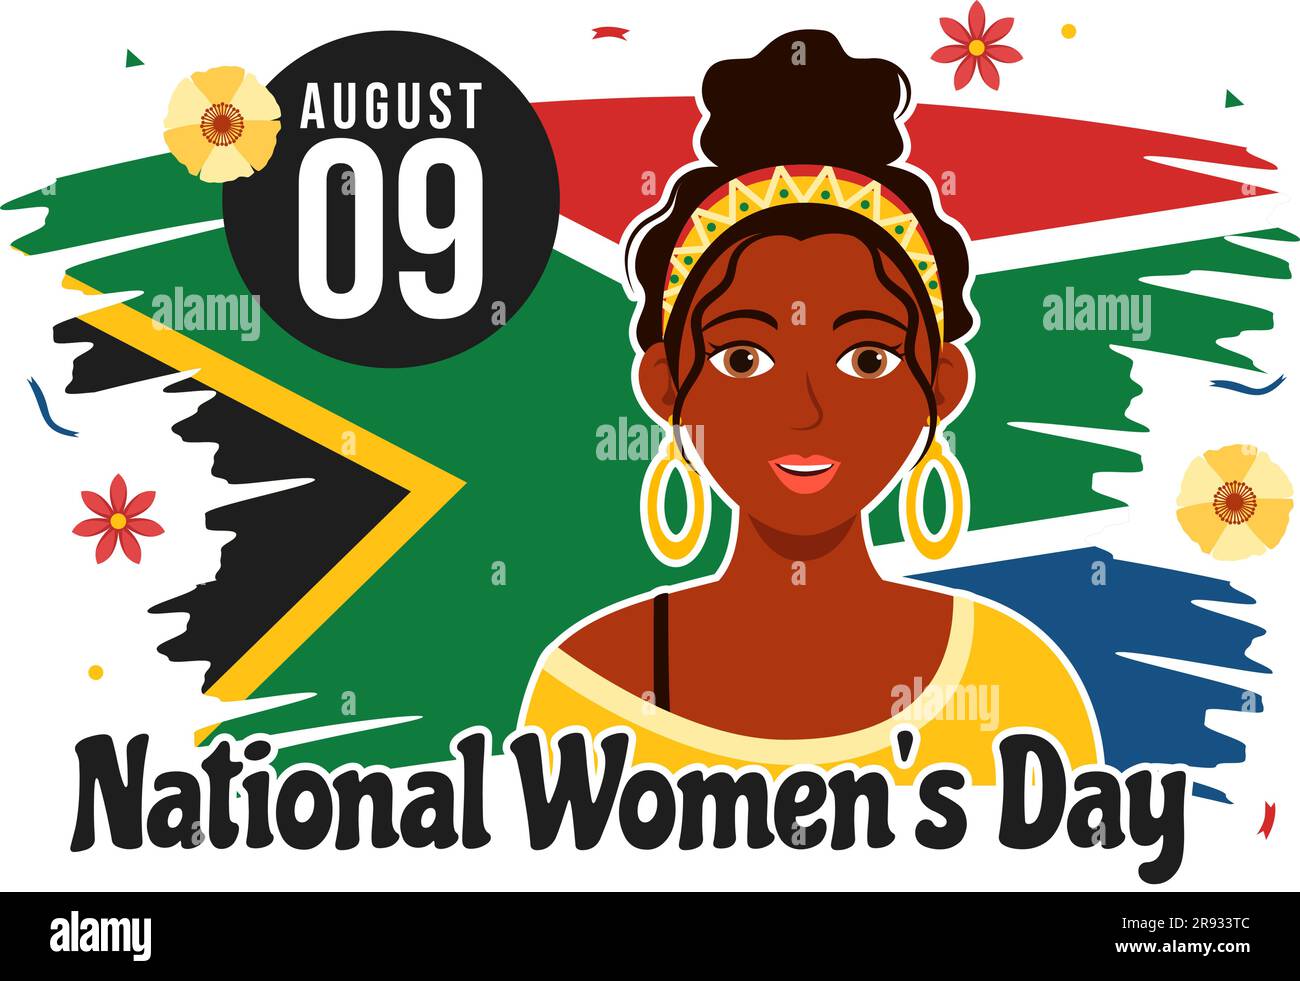 Happy Women Africa Day Celebration Vector Illustration mit ethnischer schwarzer Frau und afrikanischer Flagge in flachen, handgezeichneten Landing-Page-Vorlagen Stock Vektor